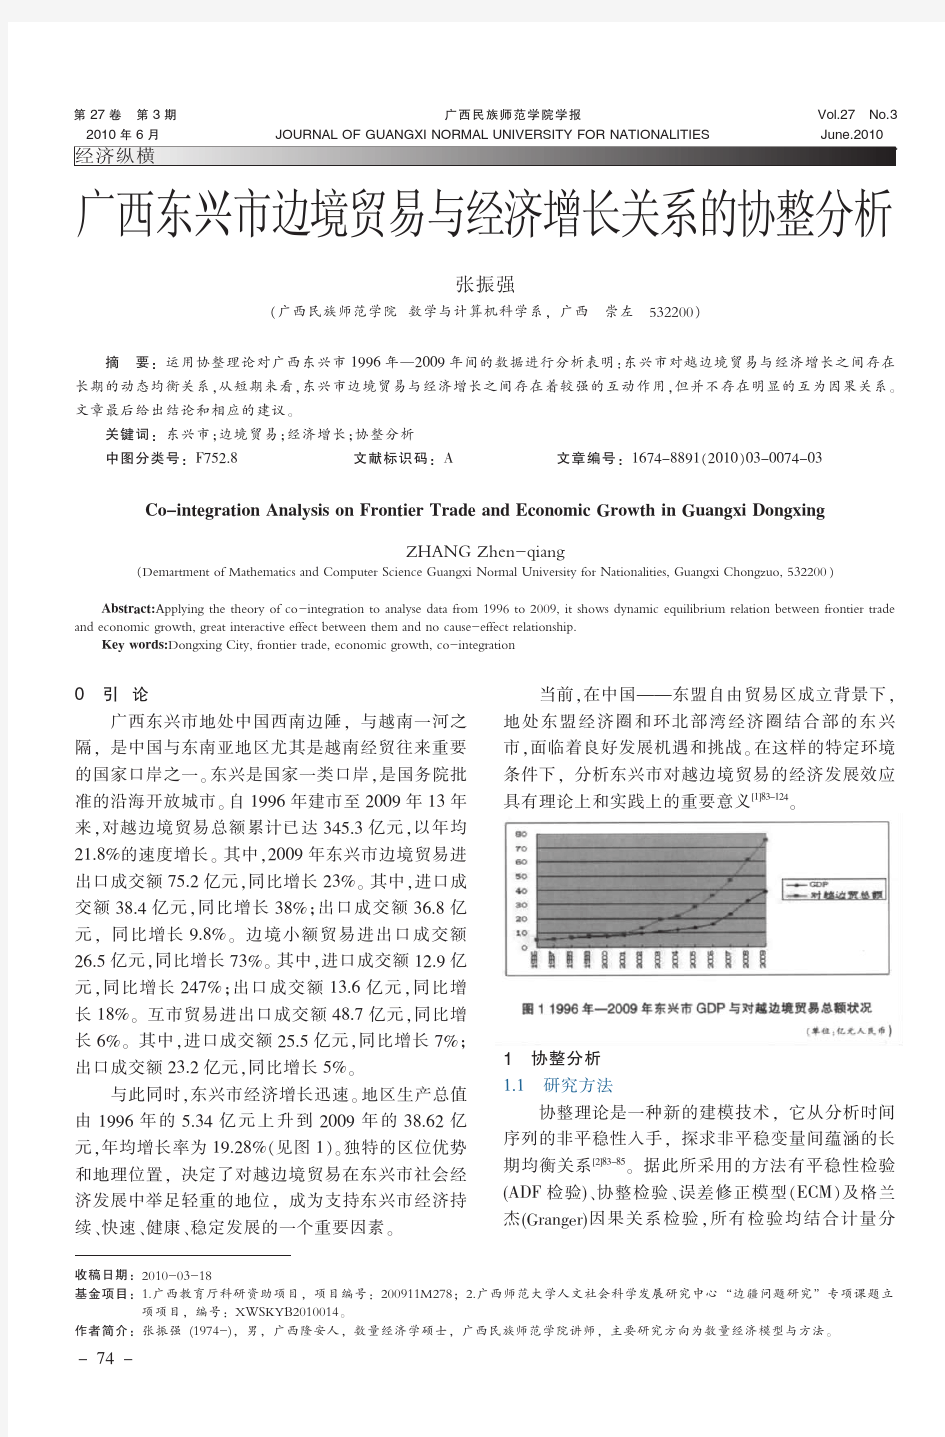 广西东兴市边境贸易与经济增长关系的协整分析